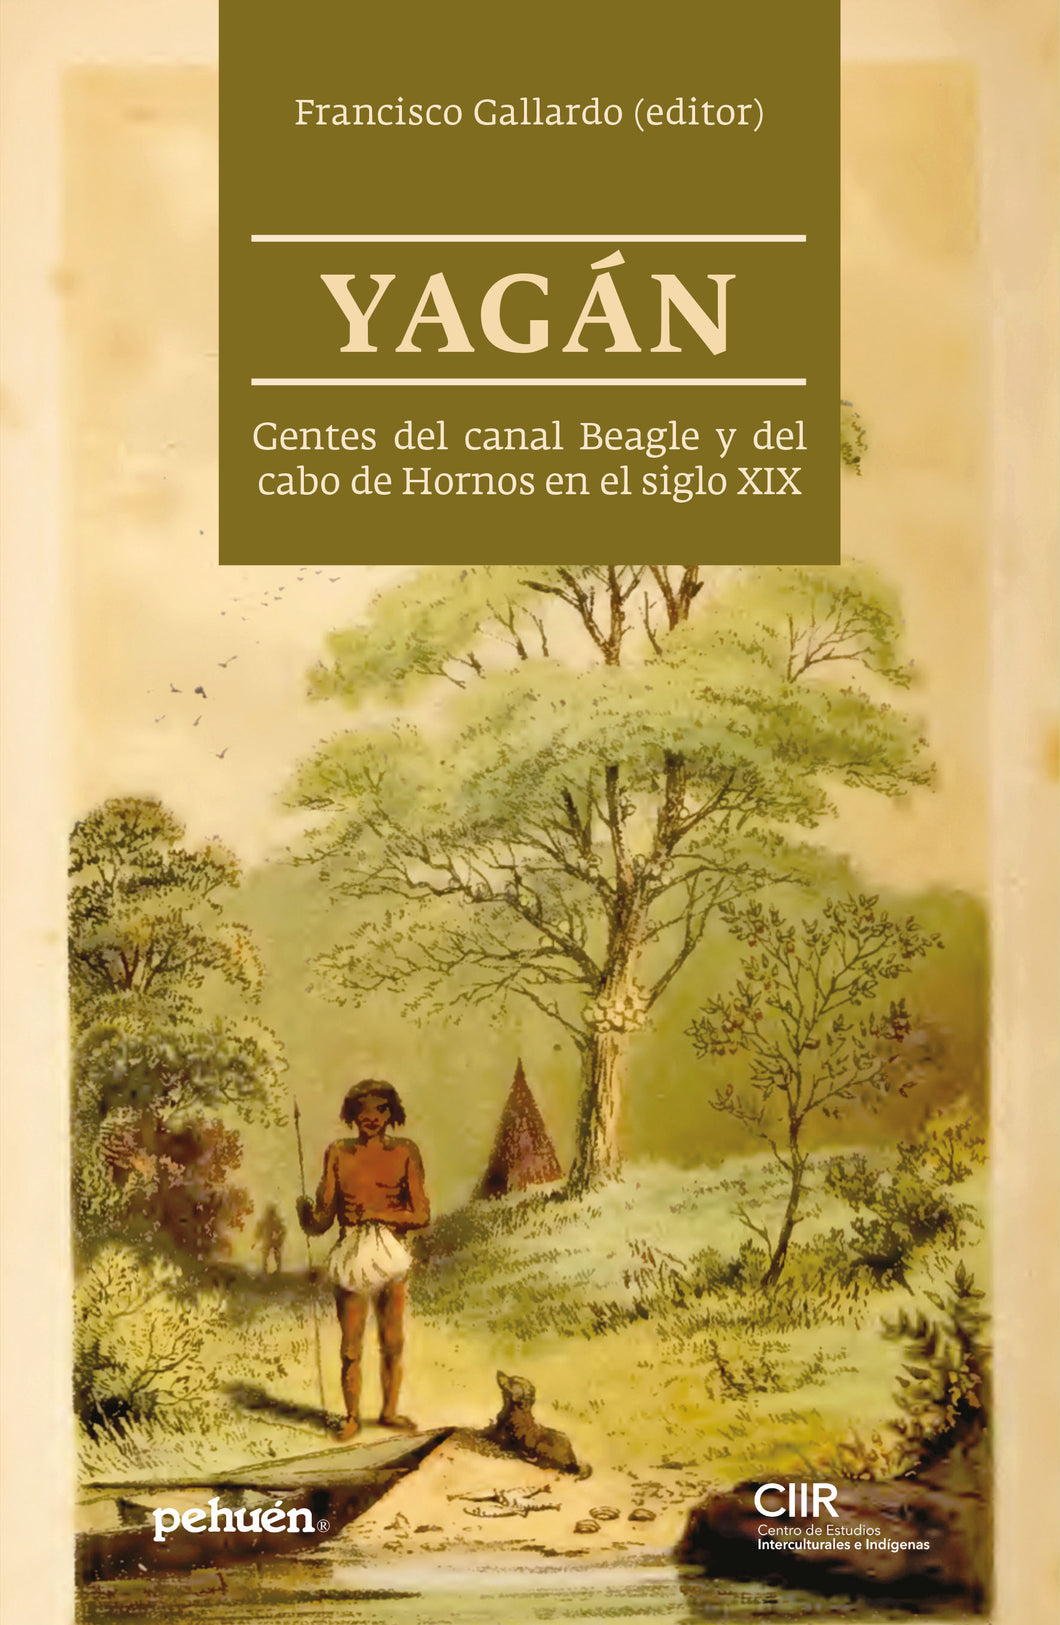 Yagán. Gentes del canal Beagle y del cabo de Hornos en el siglo XIX